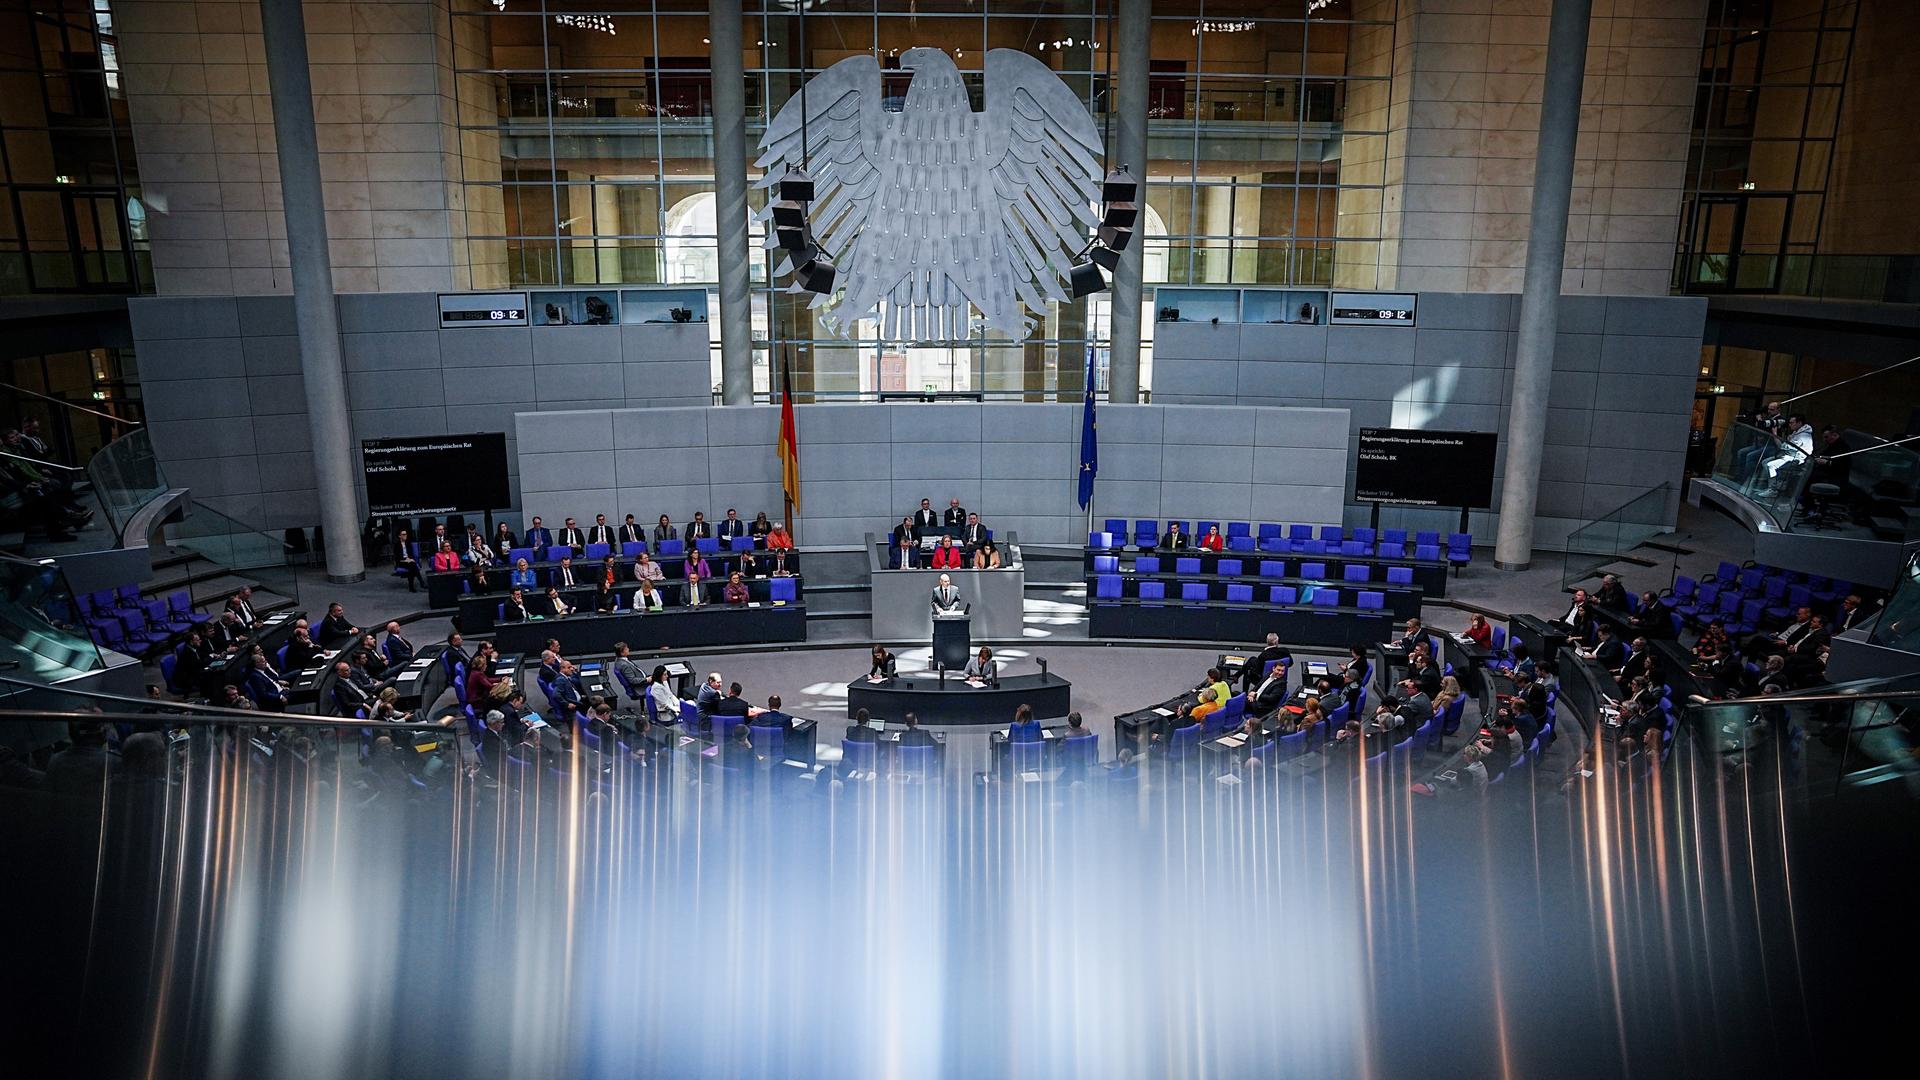 Bundeskanzler Olaf Scholz (M, SPD) spricht bei der Sitzung des Bundestags. Der Bundeskanzler gibt eine Regierungserklärung zum bevorstehenden EU-Gipfel ab.